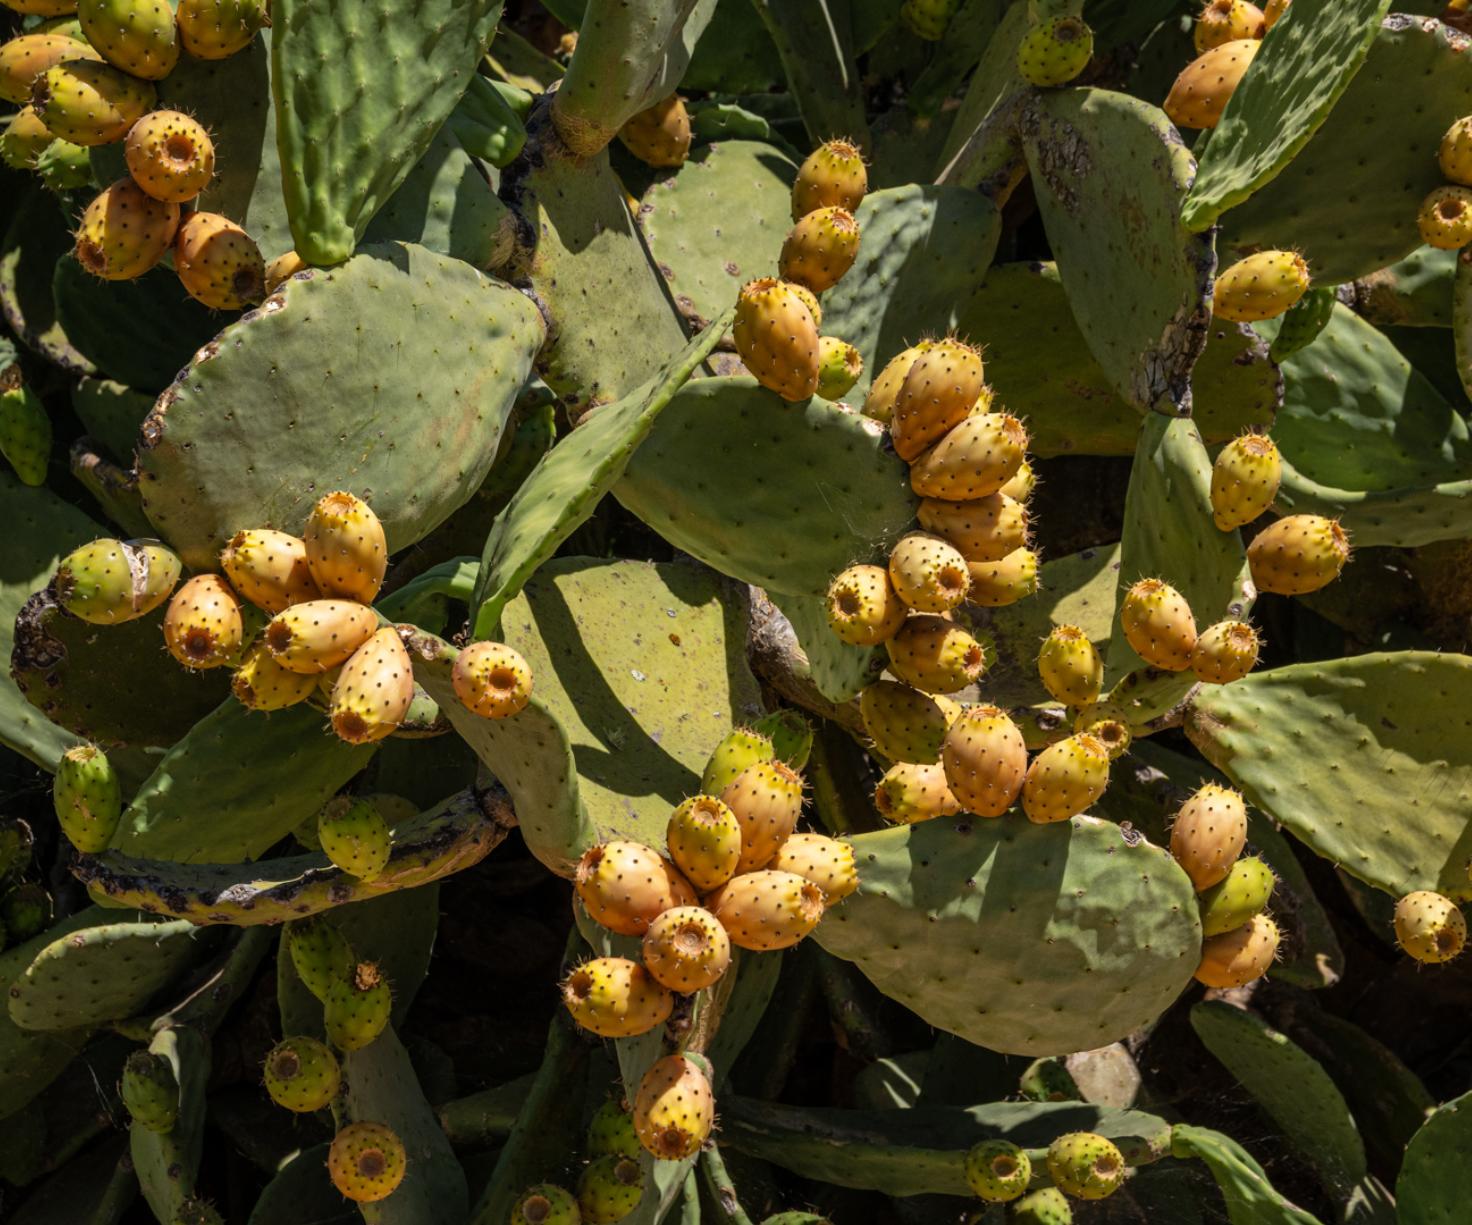 APROFIP - Associação de produtores de figo da india portugueses